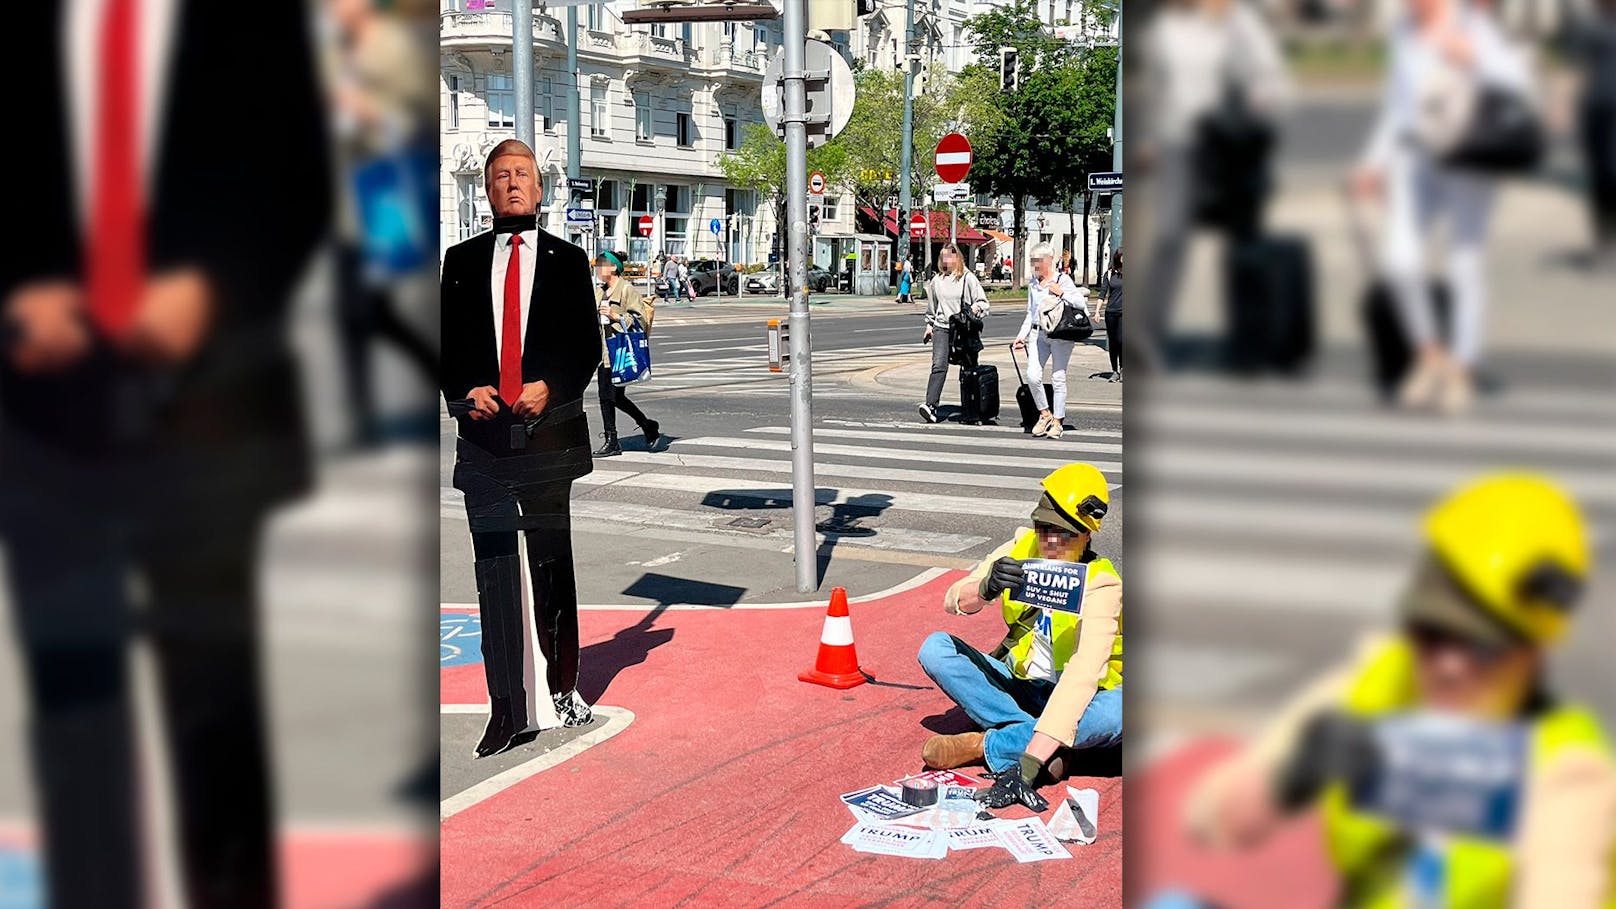 Klebe-Aktion – Trump-Fan blockiert Fahrradweg in Wien